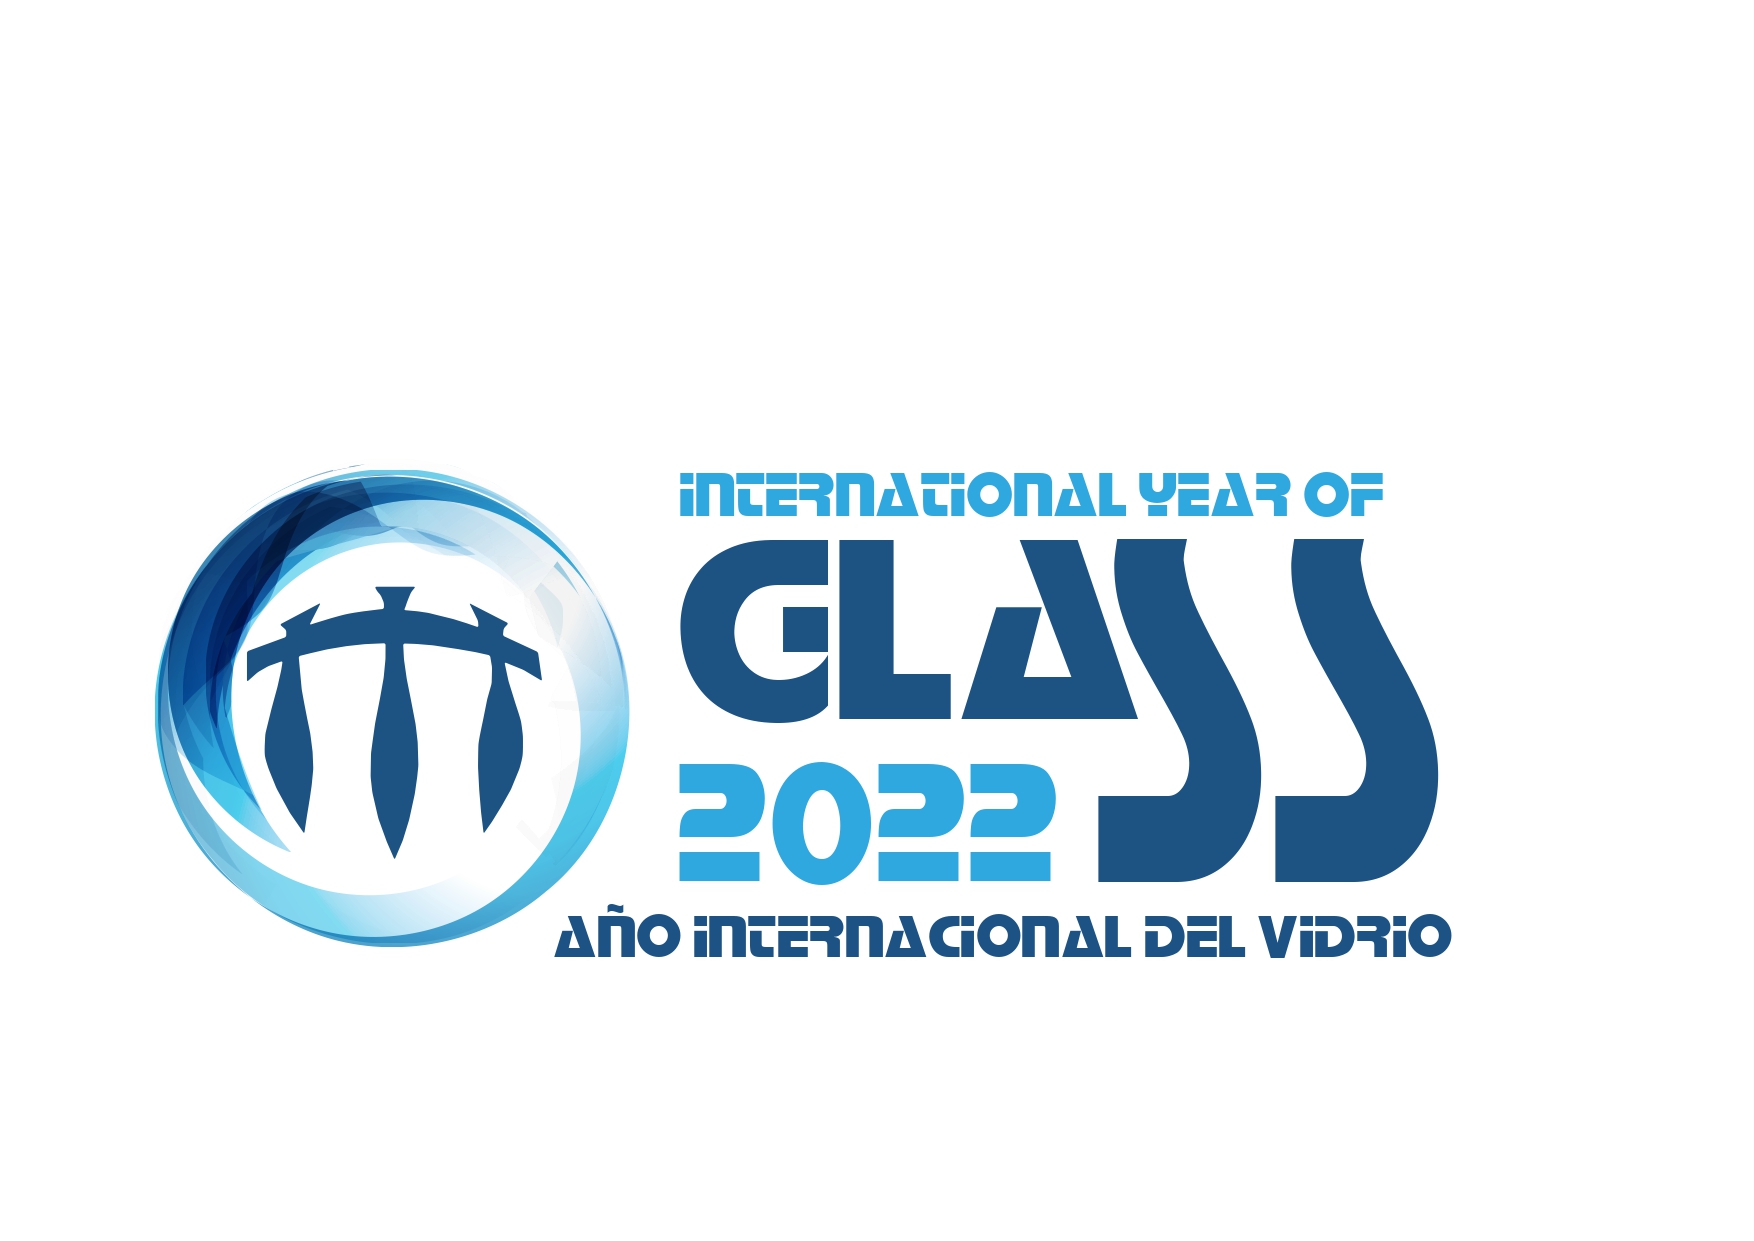 año internacional del vidrio 2022